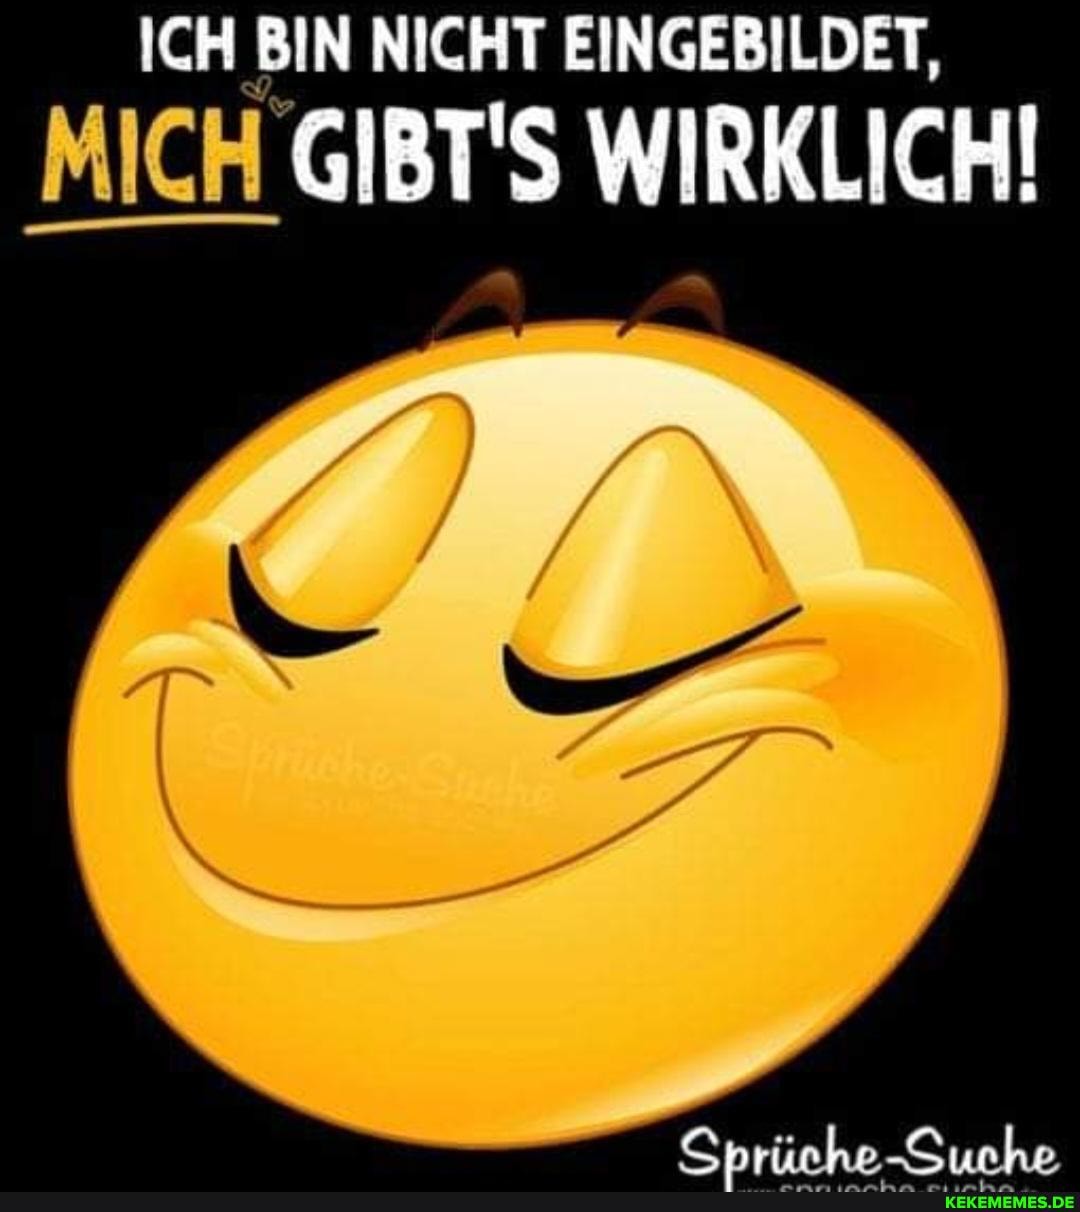 MICH GIBT'S WIRKLICH!